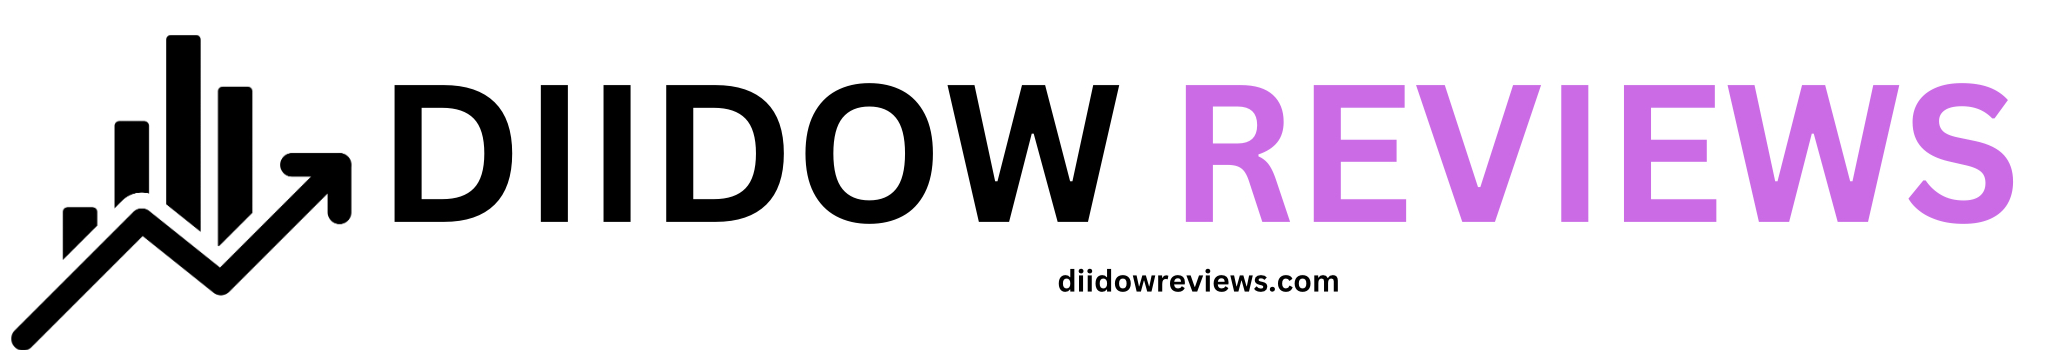 Diidow Reviews